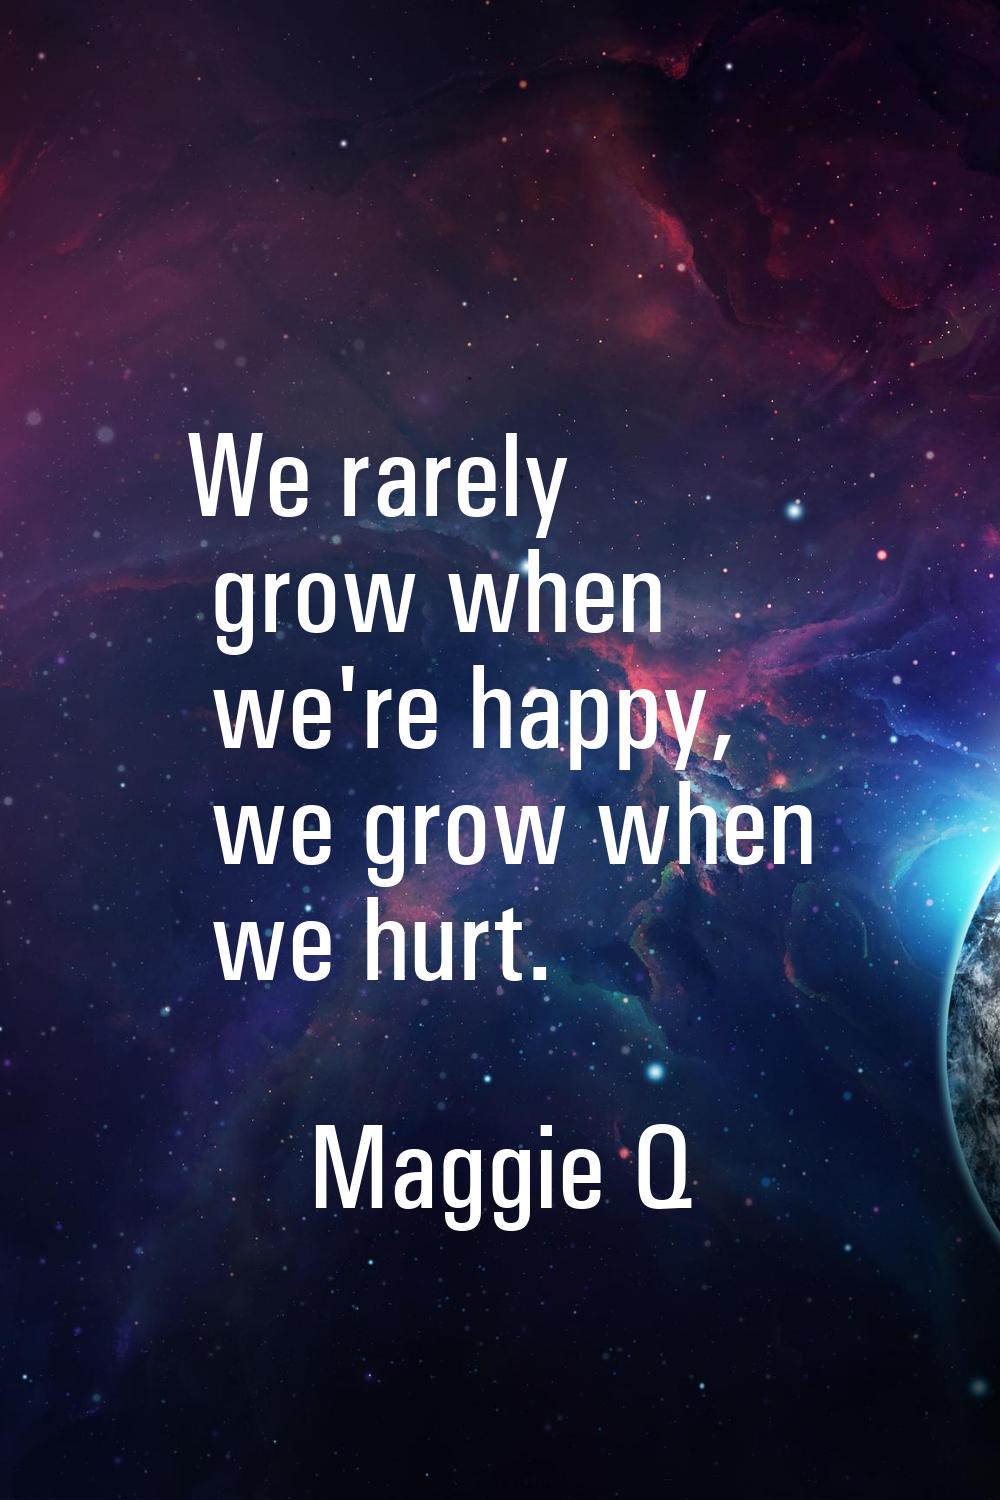 We rarely grow when we're happy, we grow when we hurt.